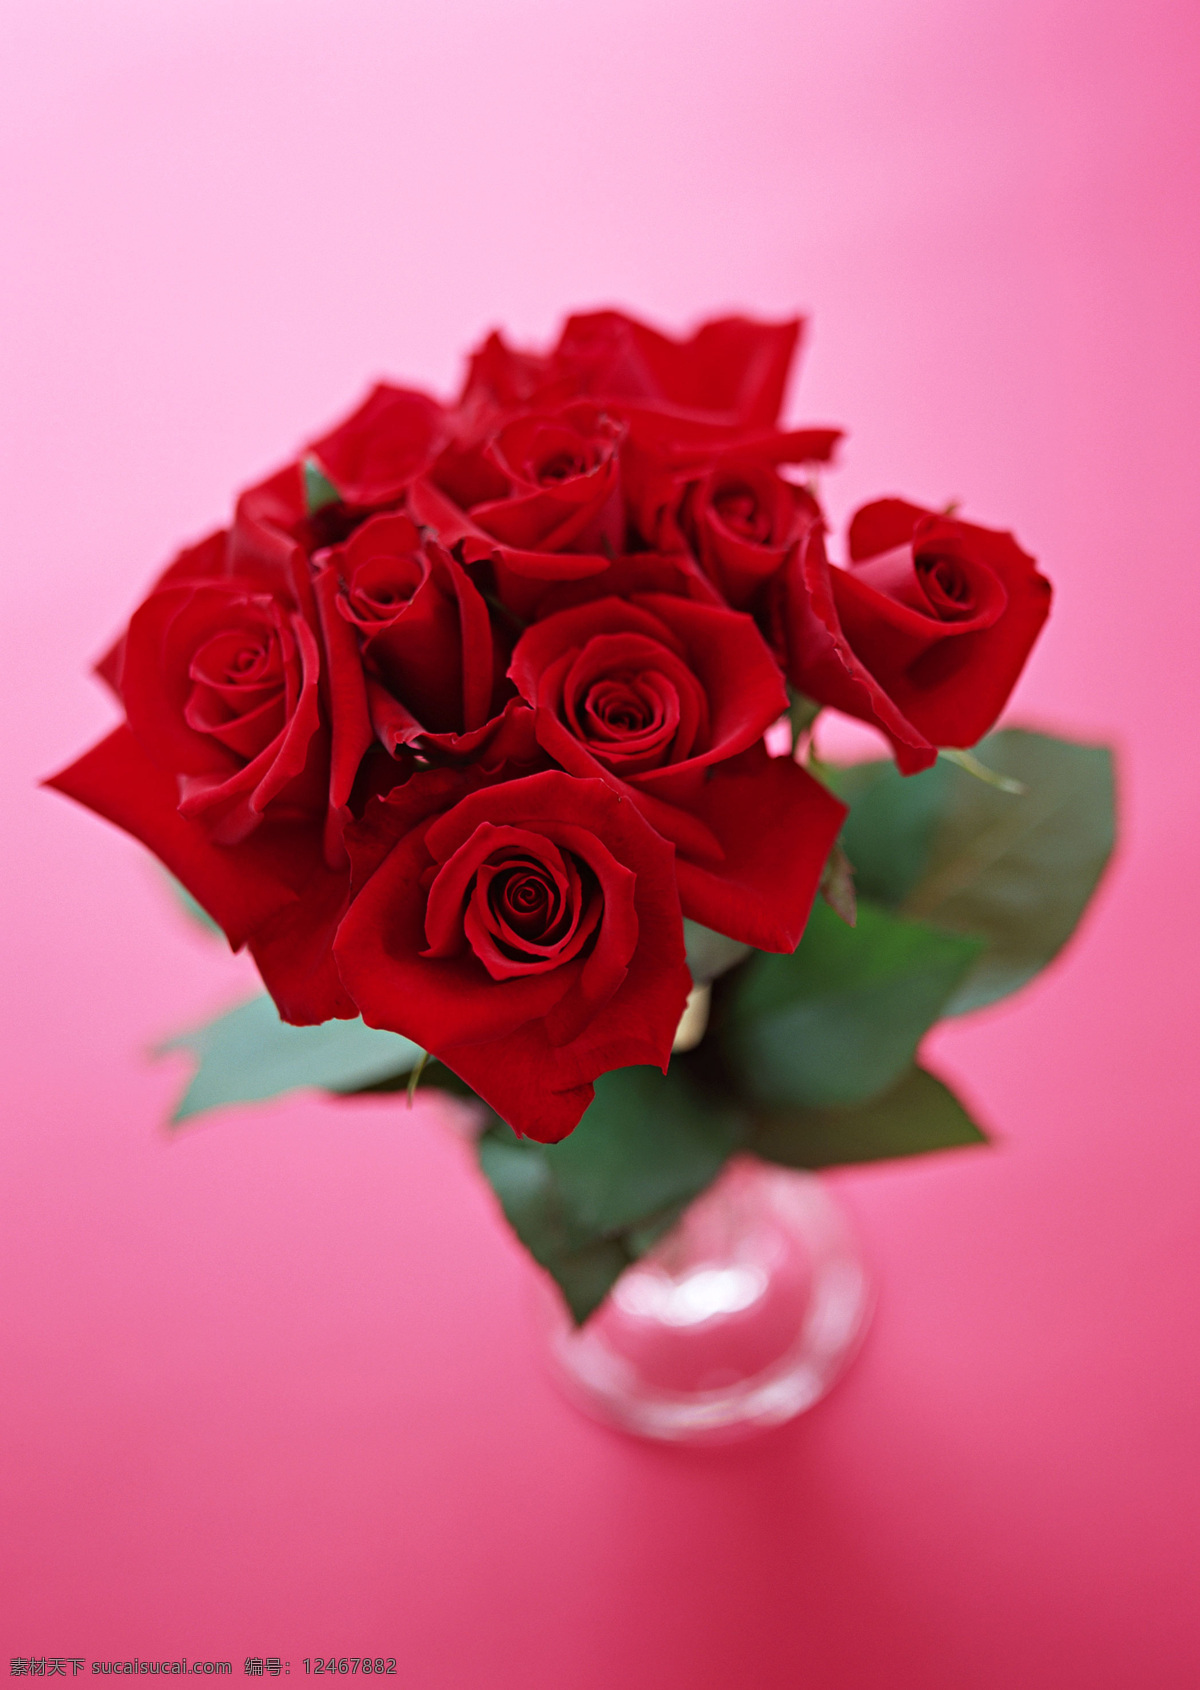 红色 玫瑰 玻璃杯 红玫瑰 花 花特写 花写真 酒杯 摄影图 微距 写真 枝叶 一束玫瑰 生物世界